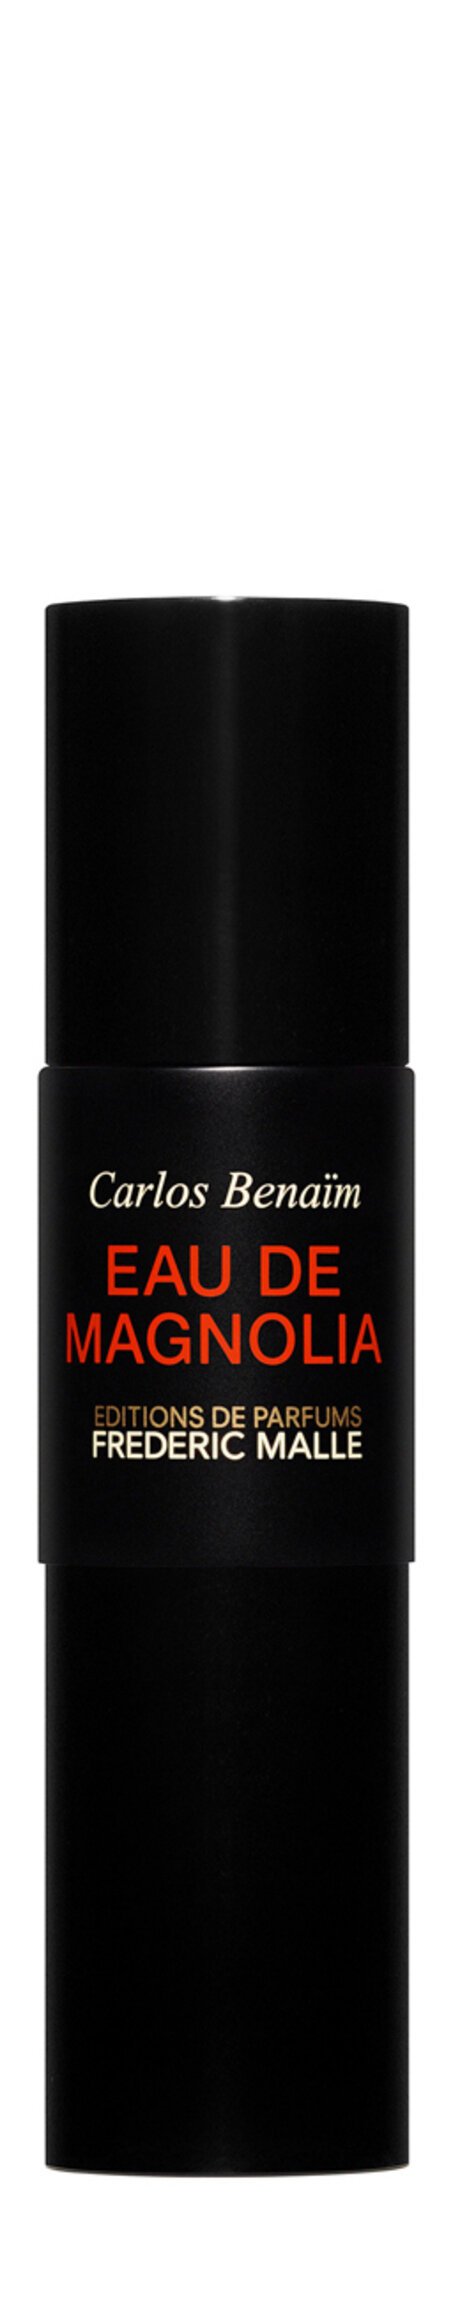 Frederic Malle Eau de Magnolia Eau De Parfum